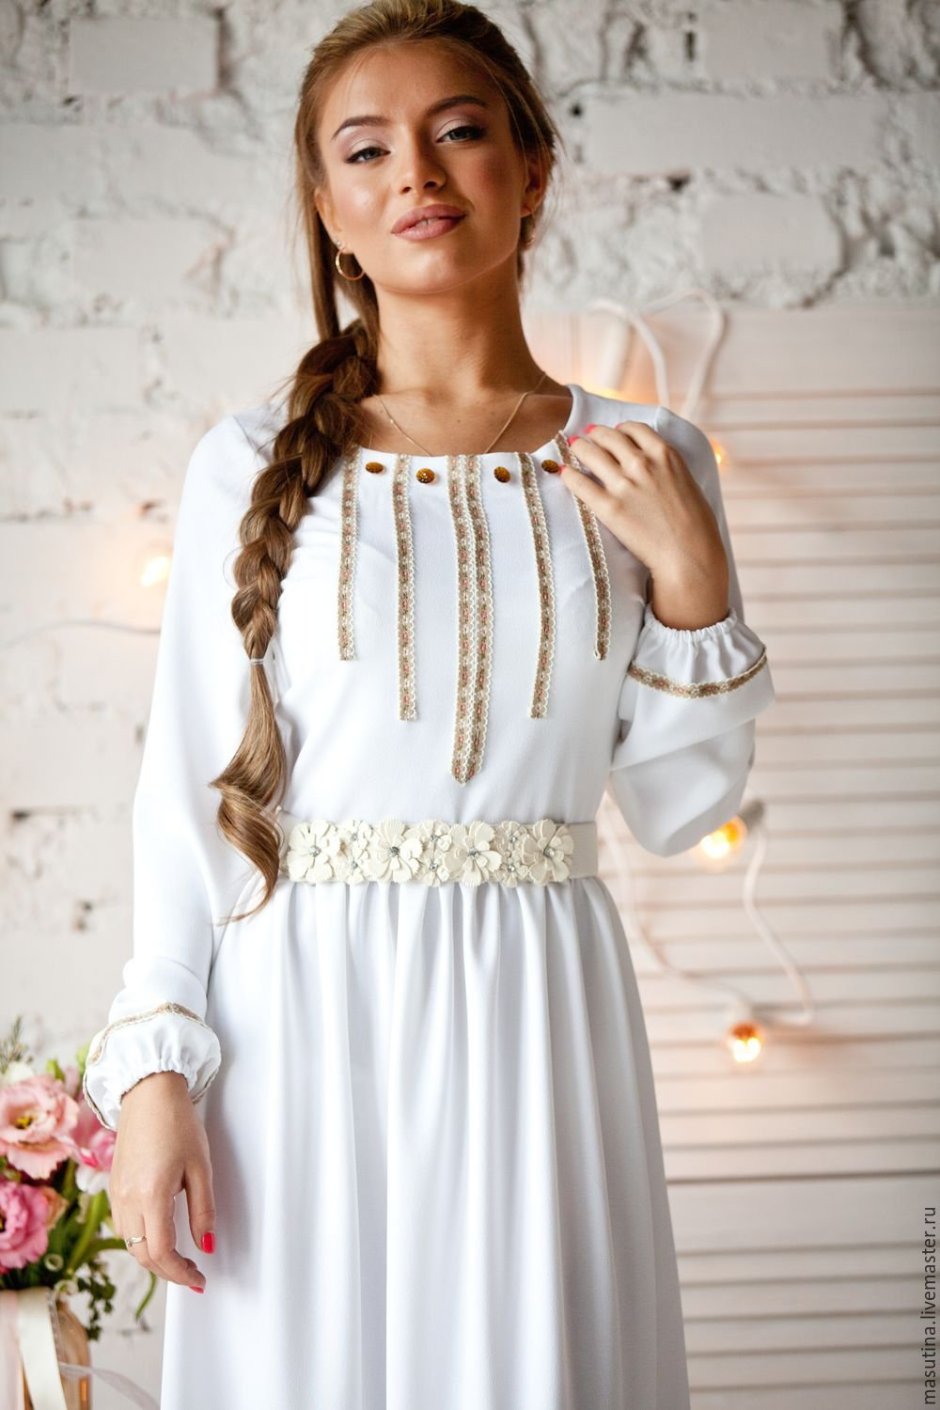 Венчальное платье в Славянском стиле